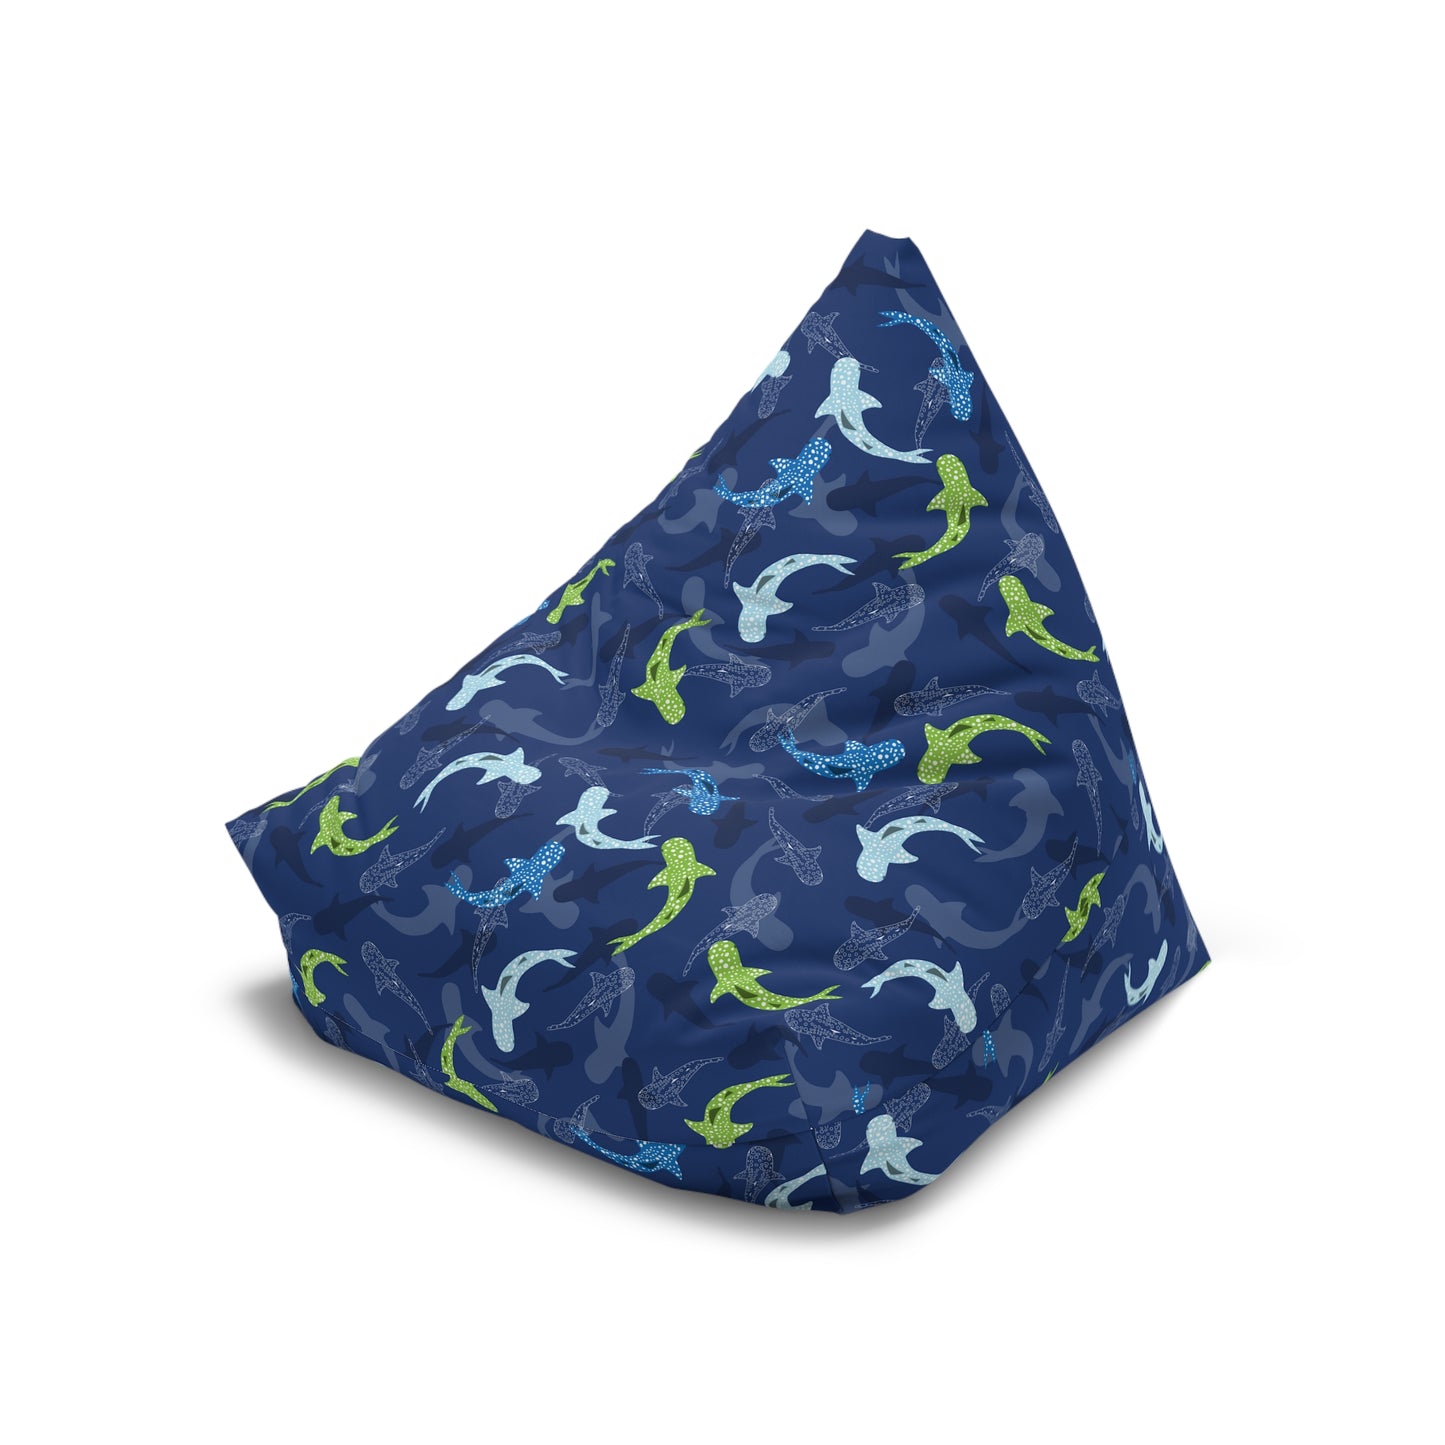 Reef Sharks | Bean Bag Chair Cover